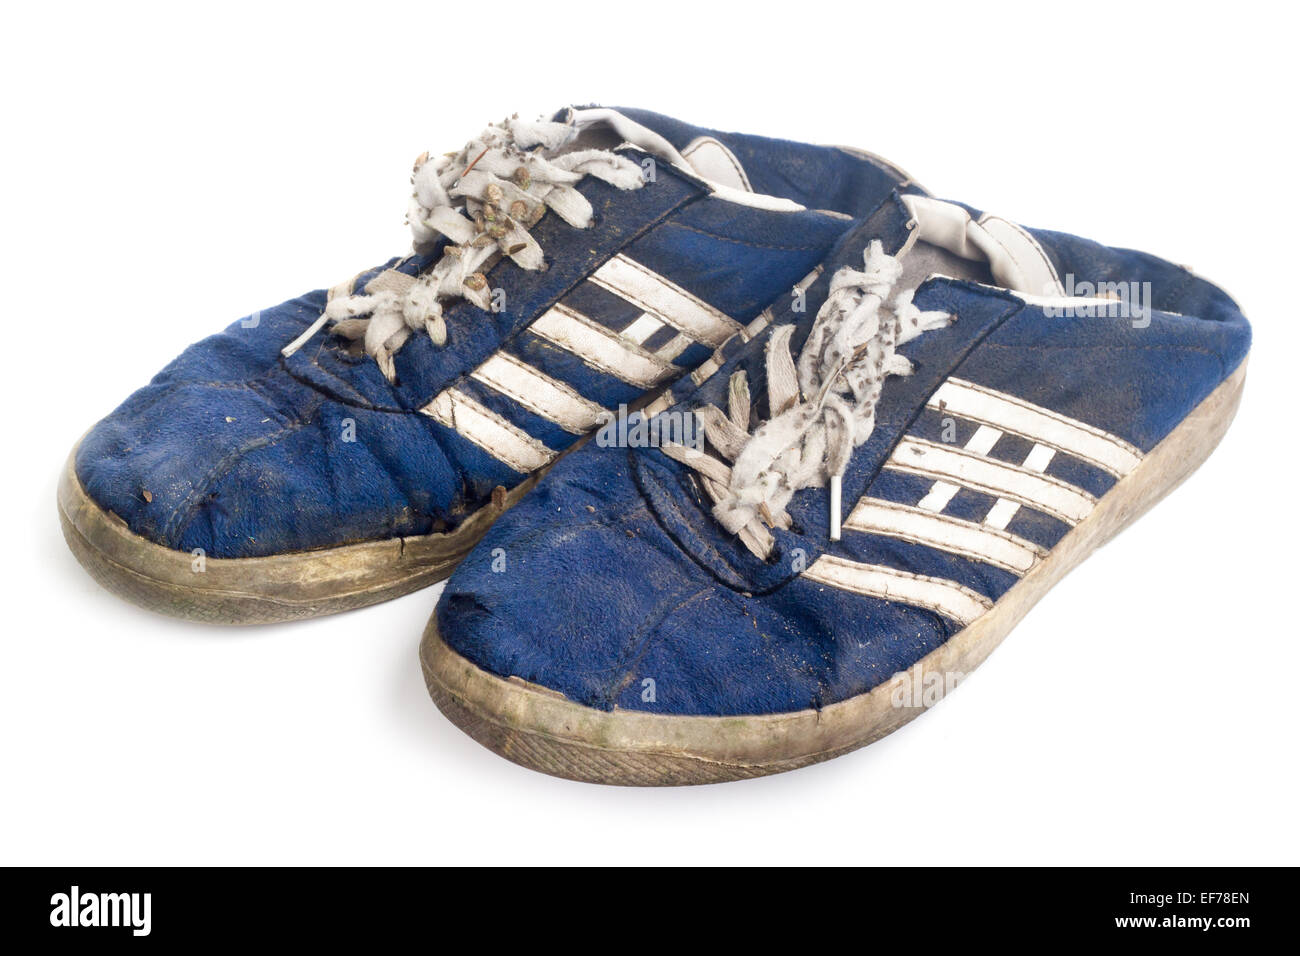 Старые кроссовки купить. Старые кроссовки. Старые кеды. Синие кроссовки старые. Старые синие кеды.